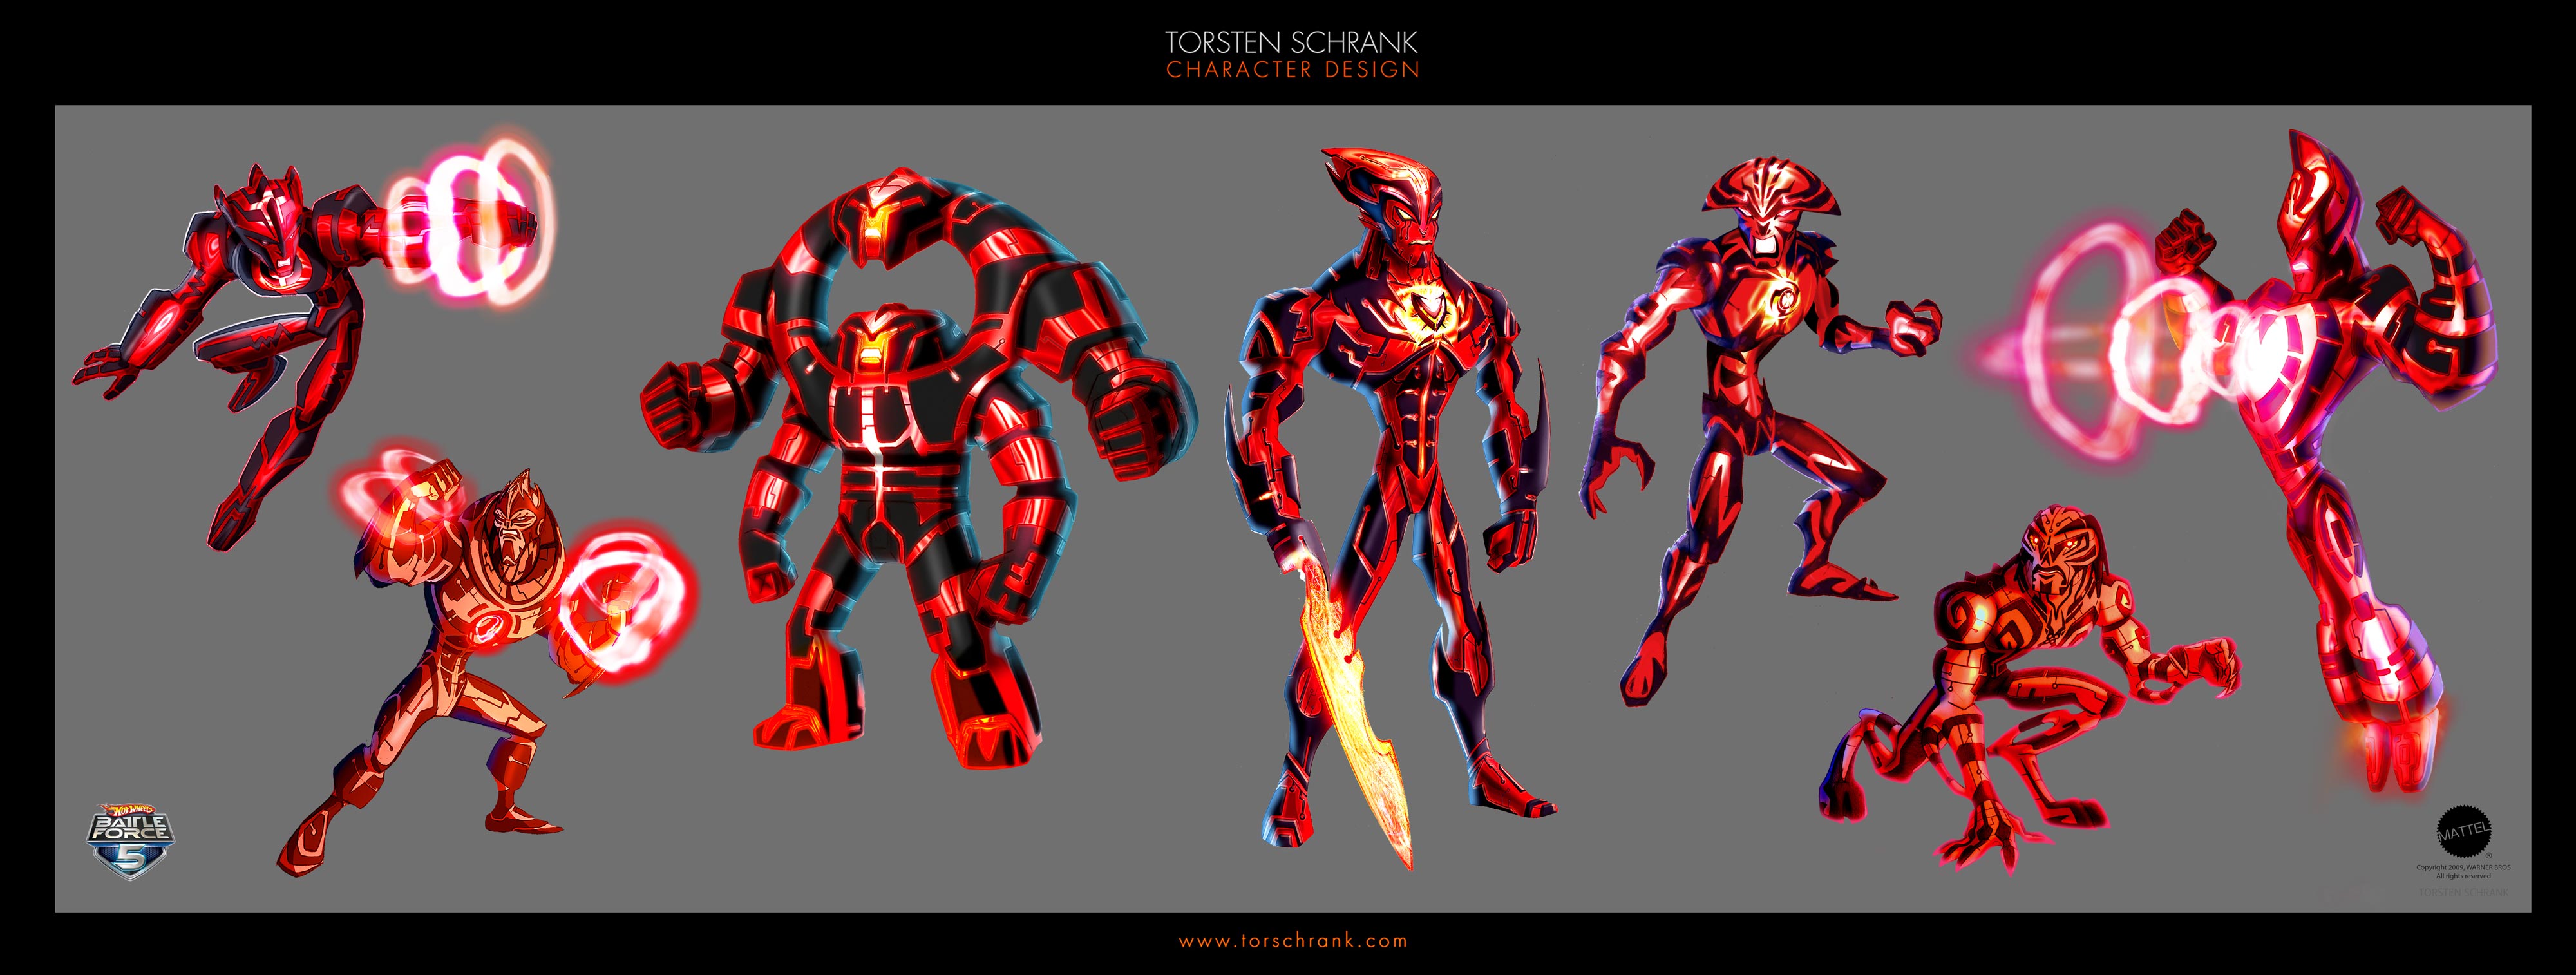 Battle Force 5 - Character Design - TORSTEN SCHRANK